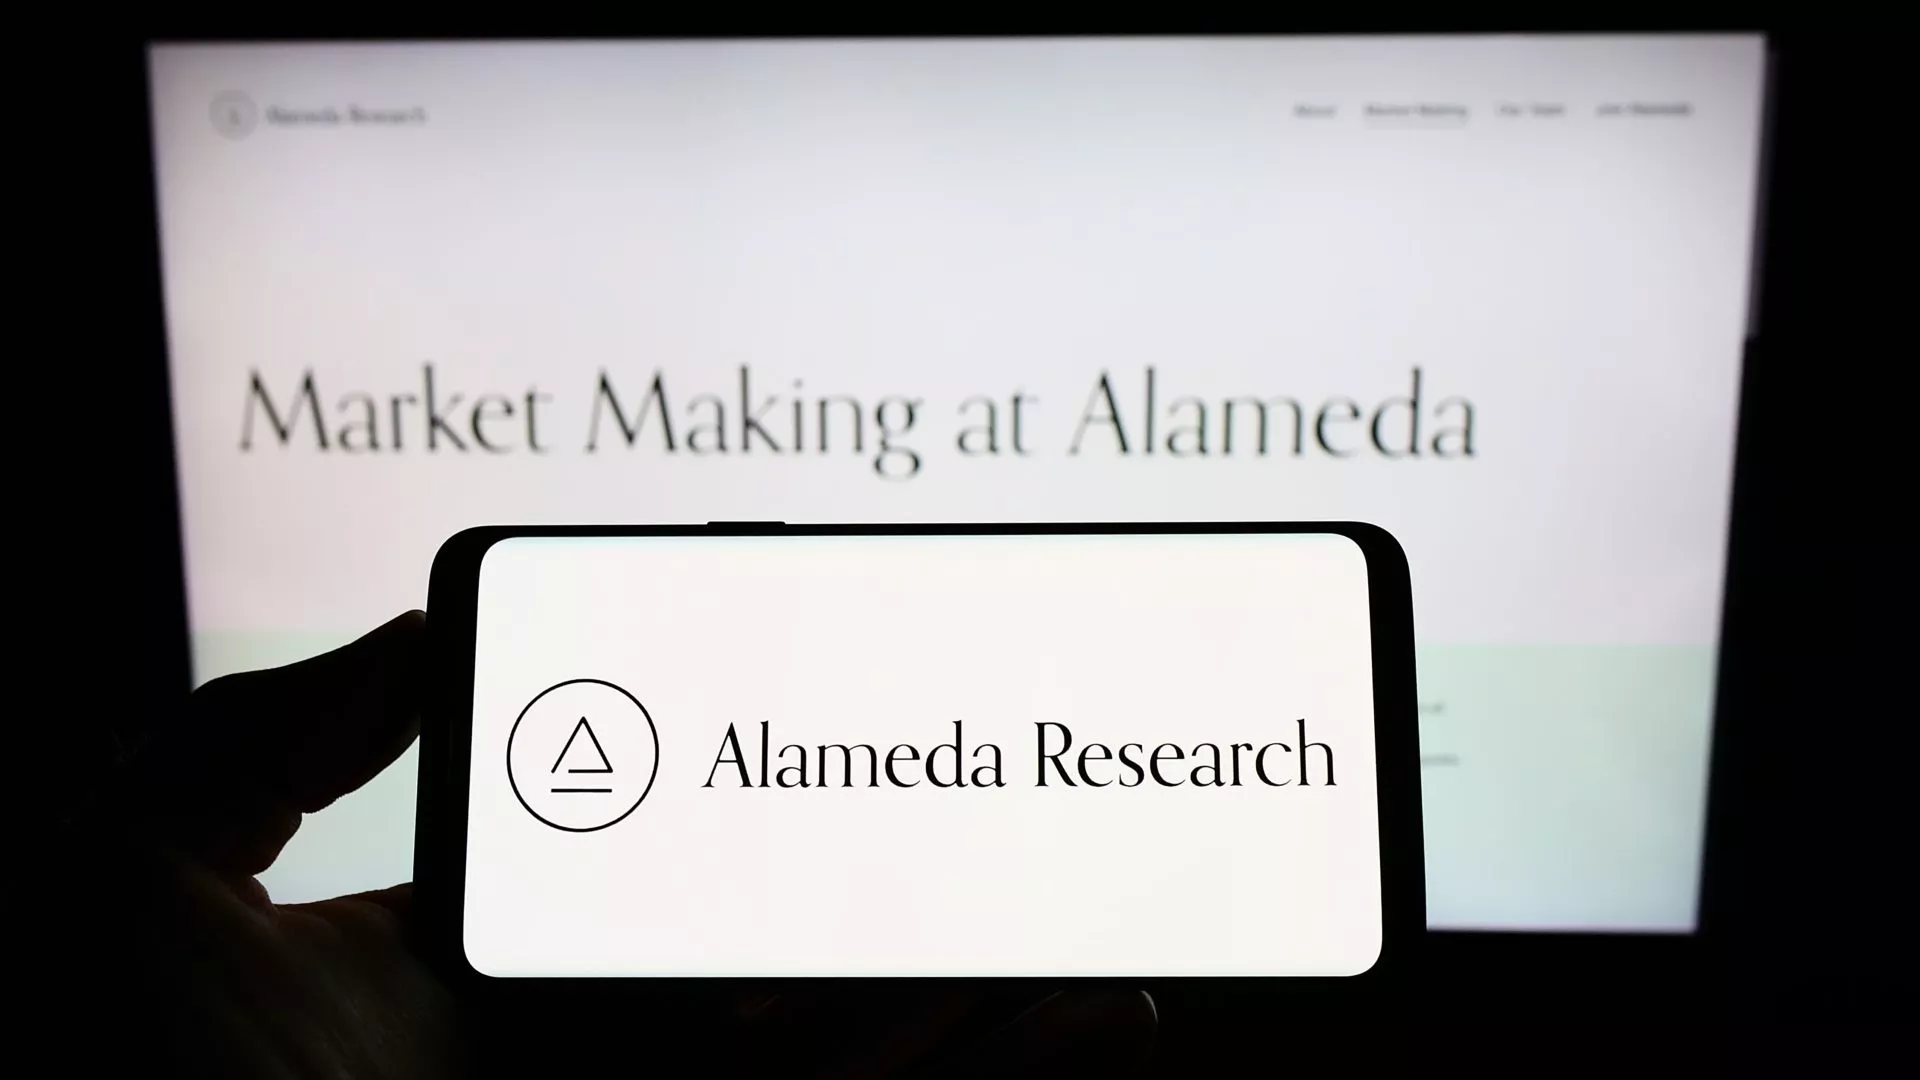 Curatoren van Alameda Research maken gigantische blunder